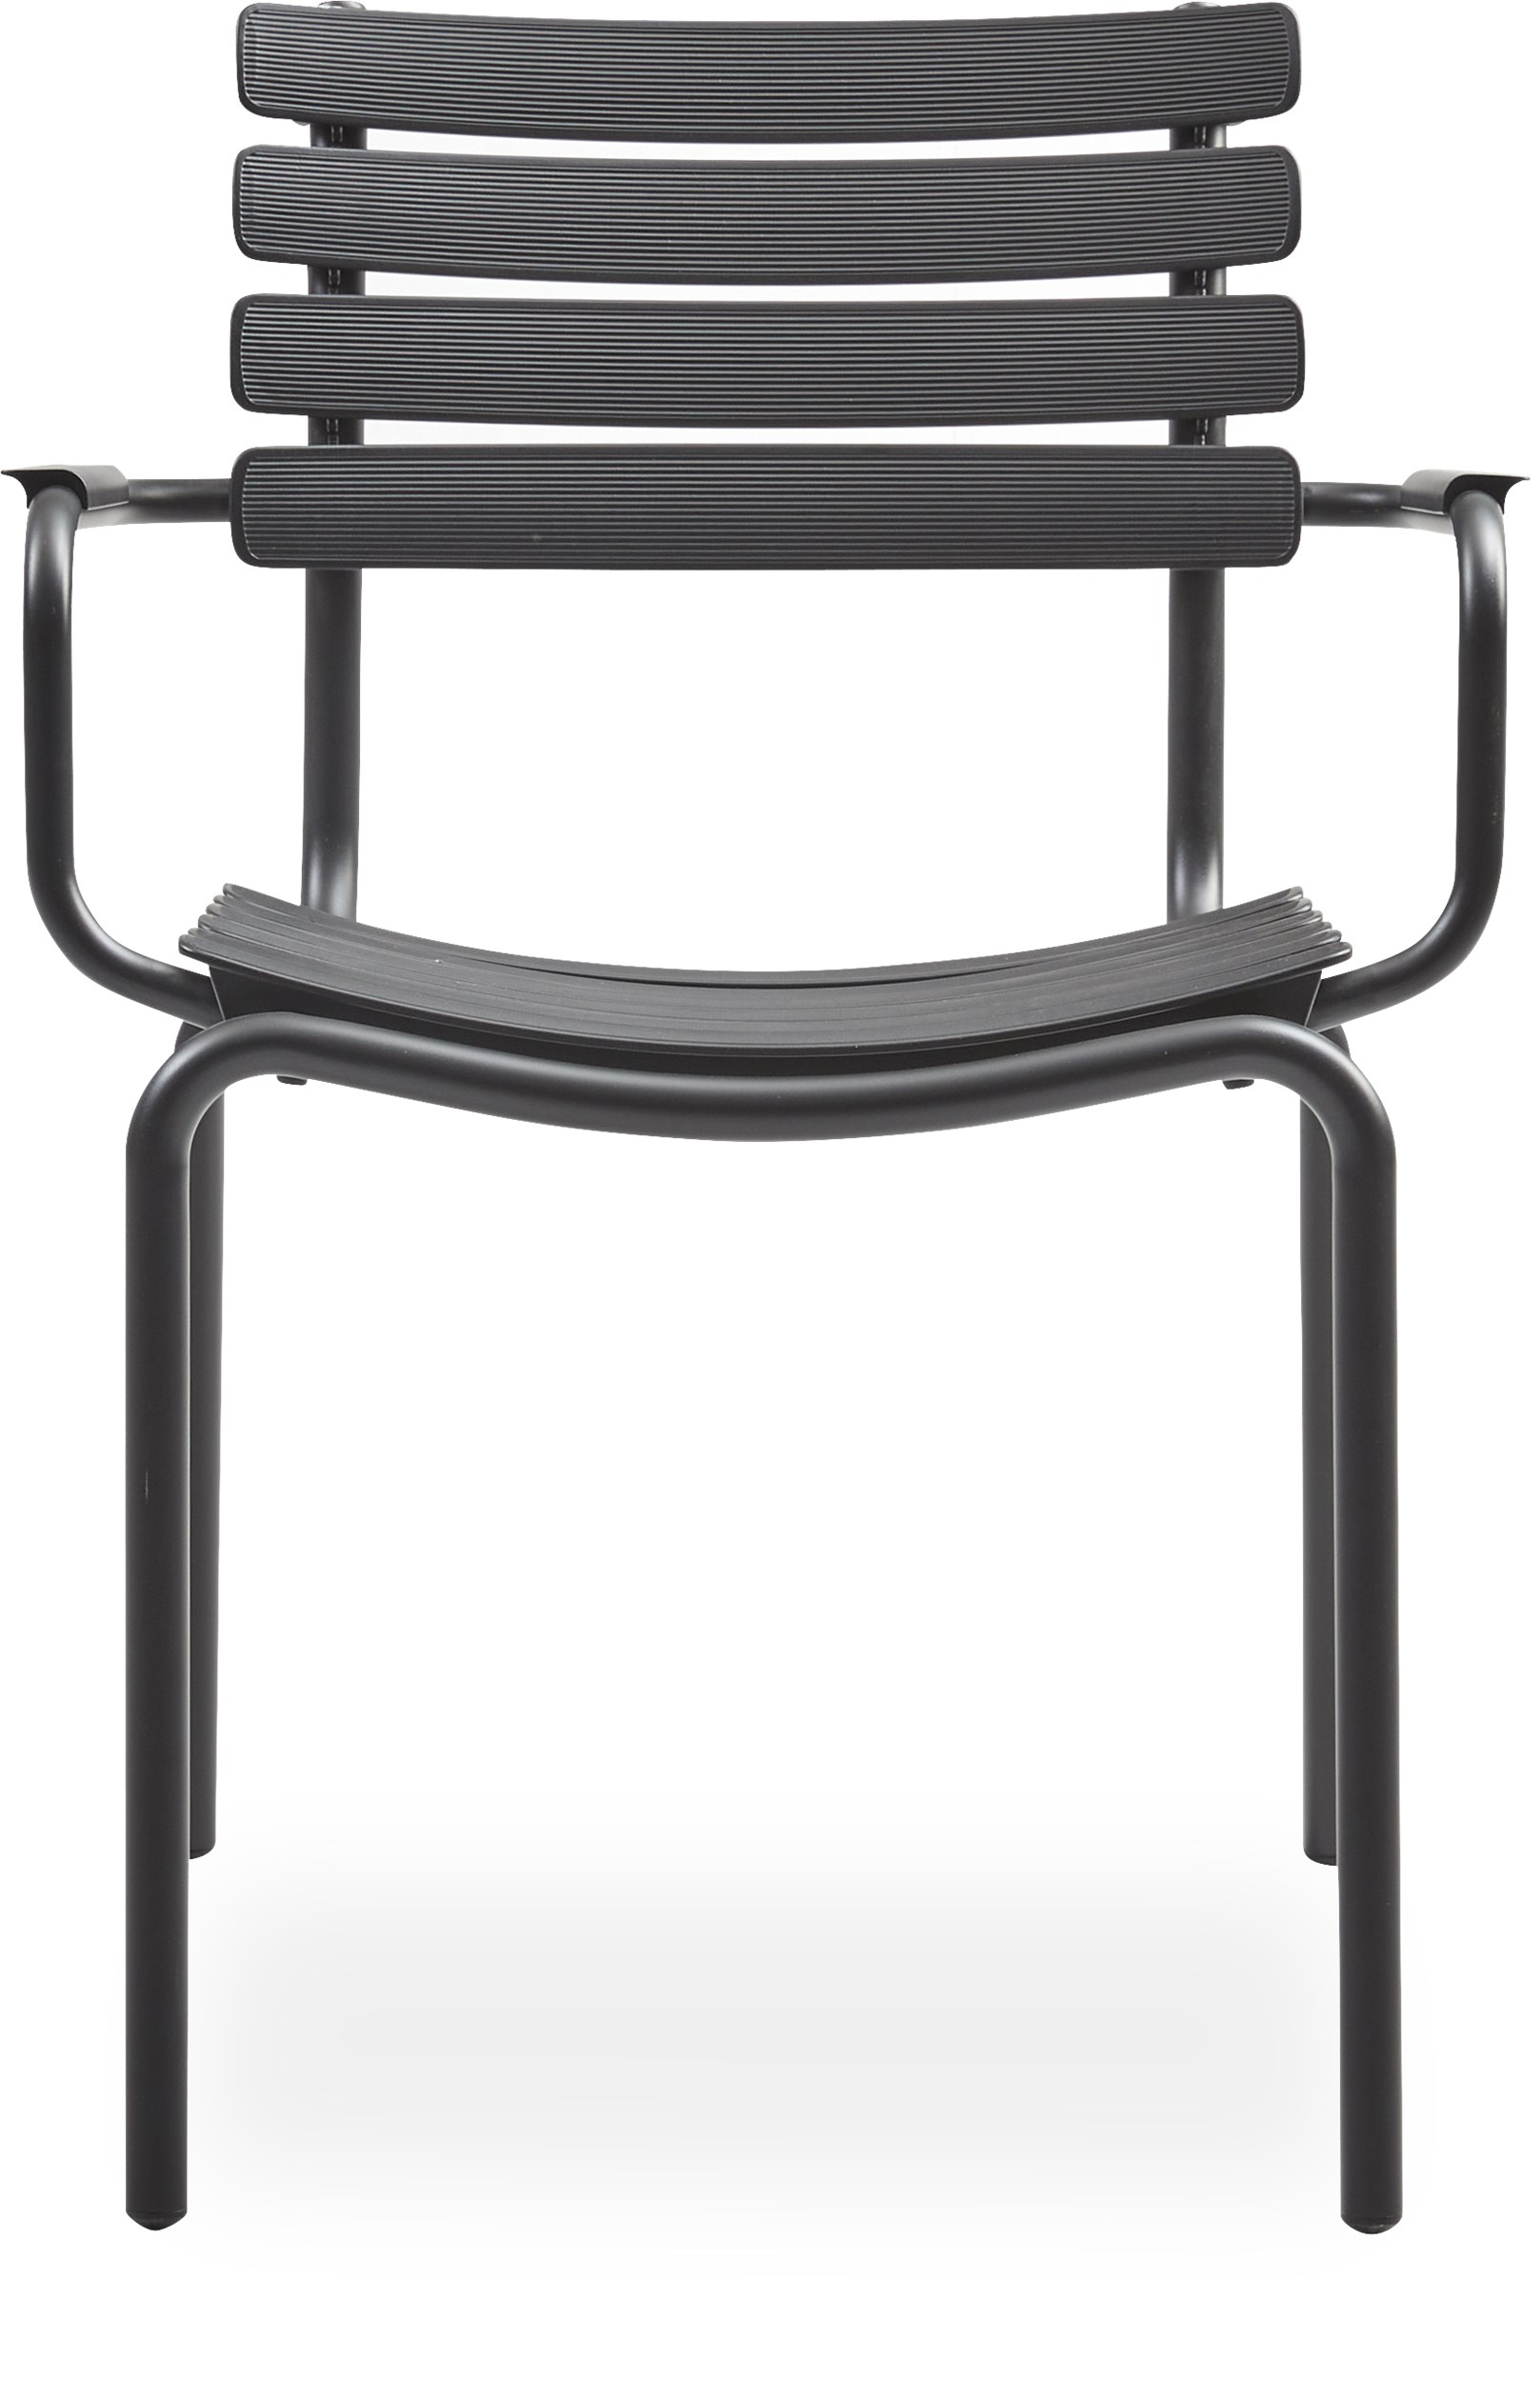 ReClips Trädgårdsstol - Lameller i svart återvunnen plast, stomme i svart pulverlackerad aluminium och armstöd i svart, pulverlackerat aluminium